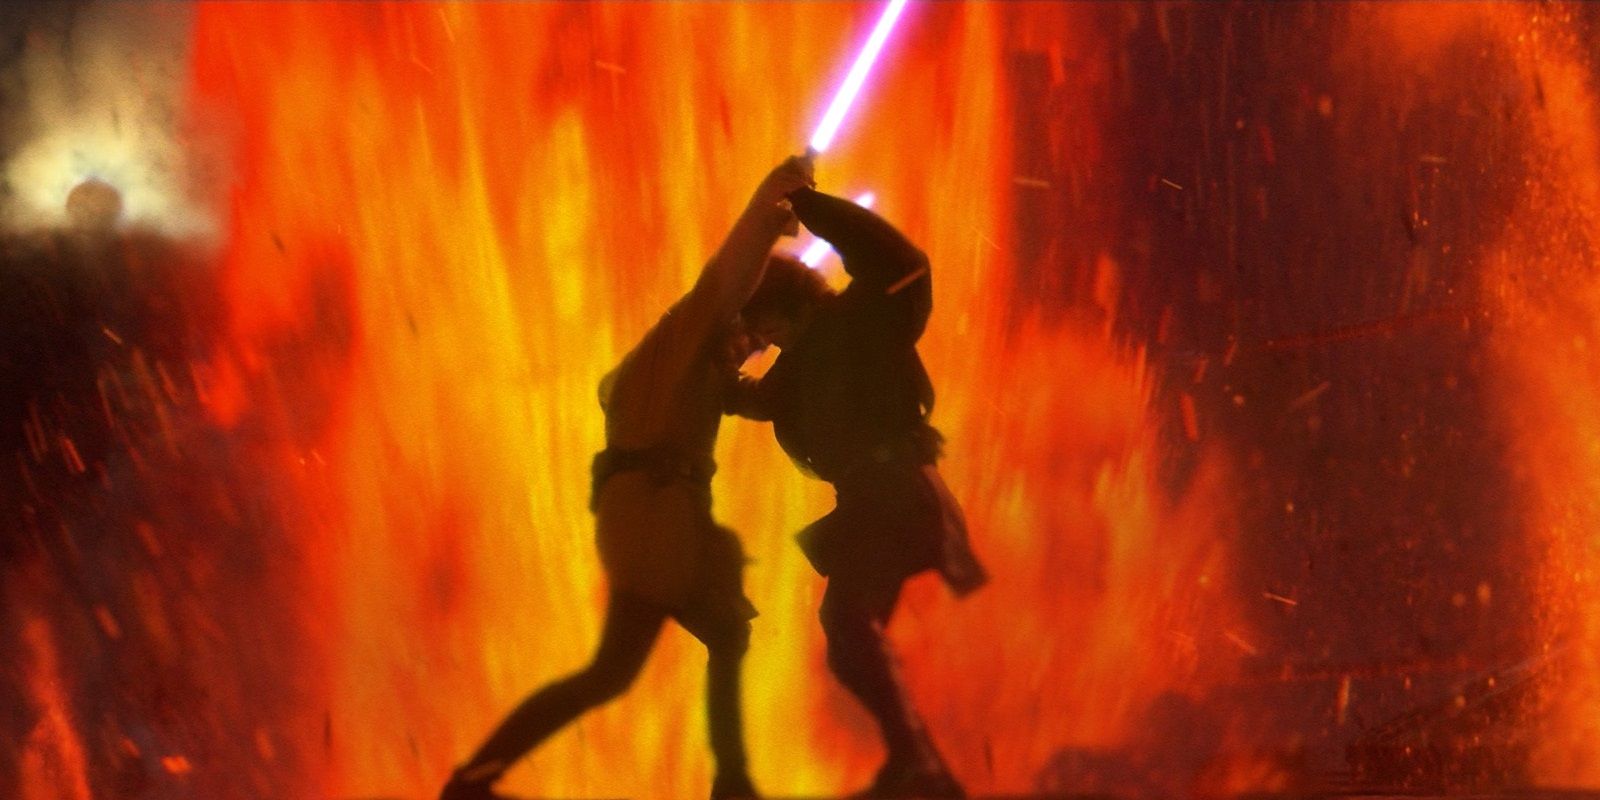 Anakin and Obi-Wan fighting on Mustafar